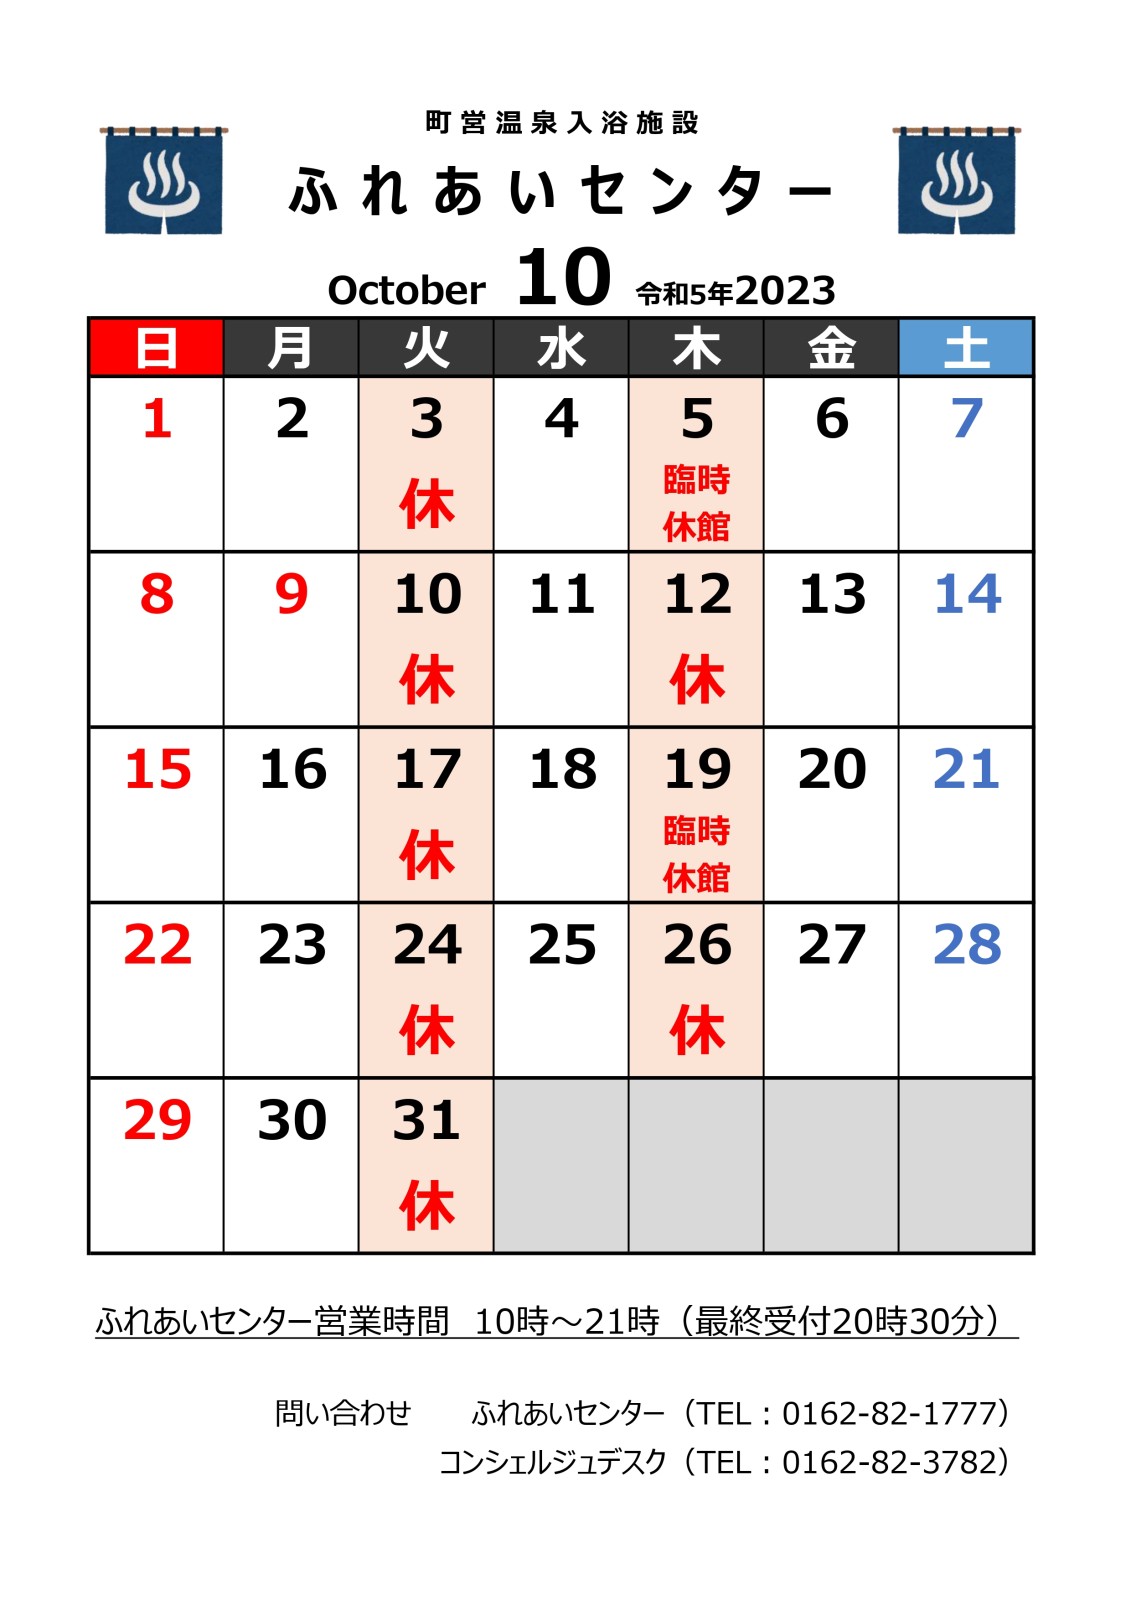 【ふれあいセンター】10月の営業について